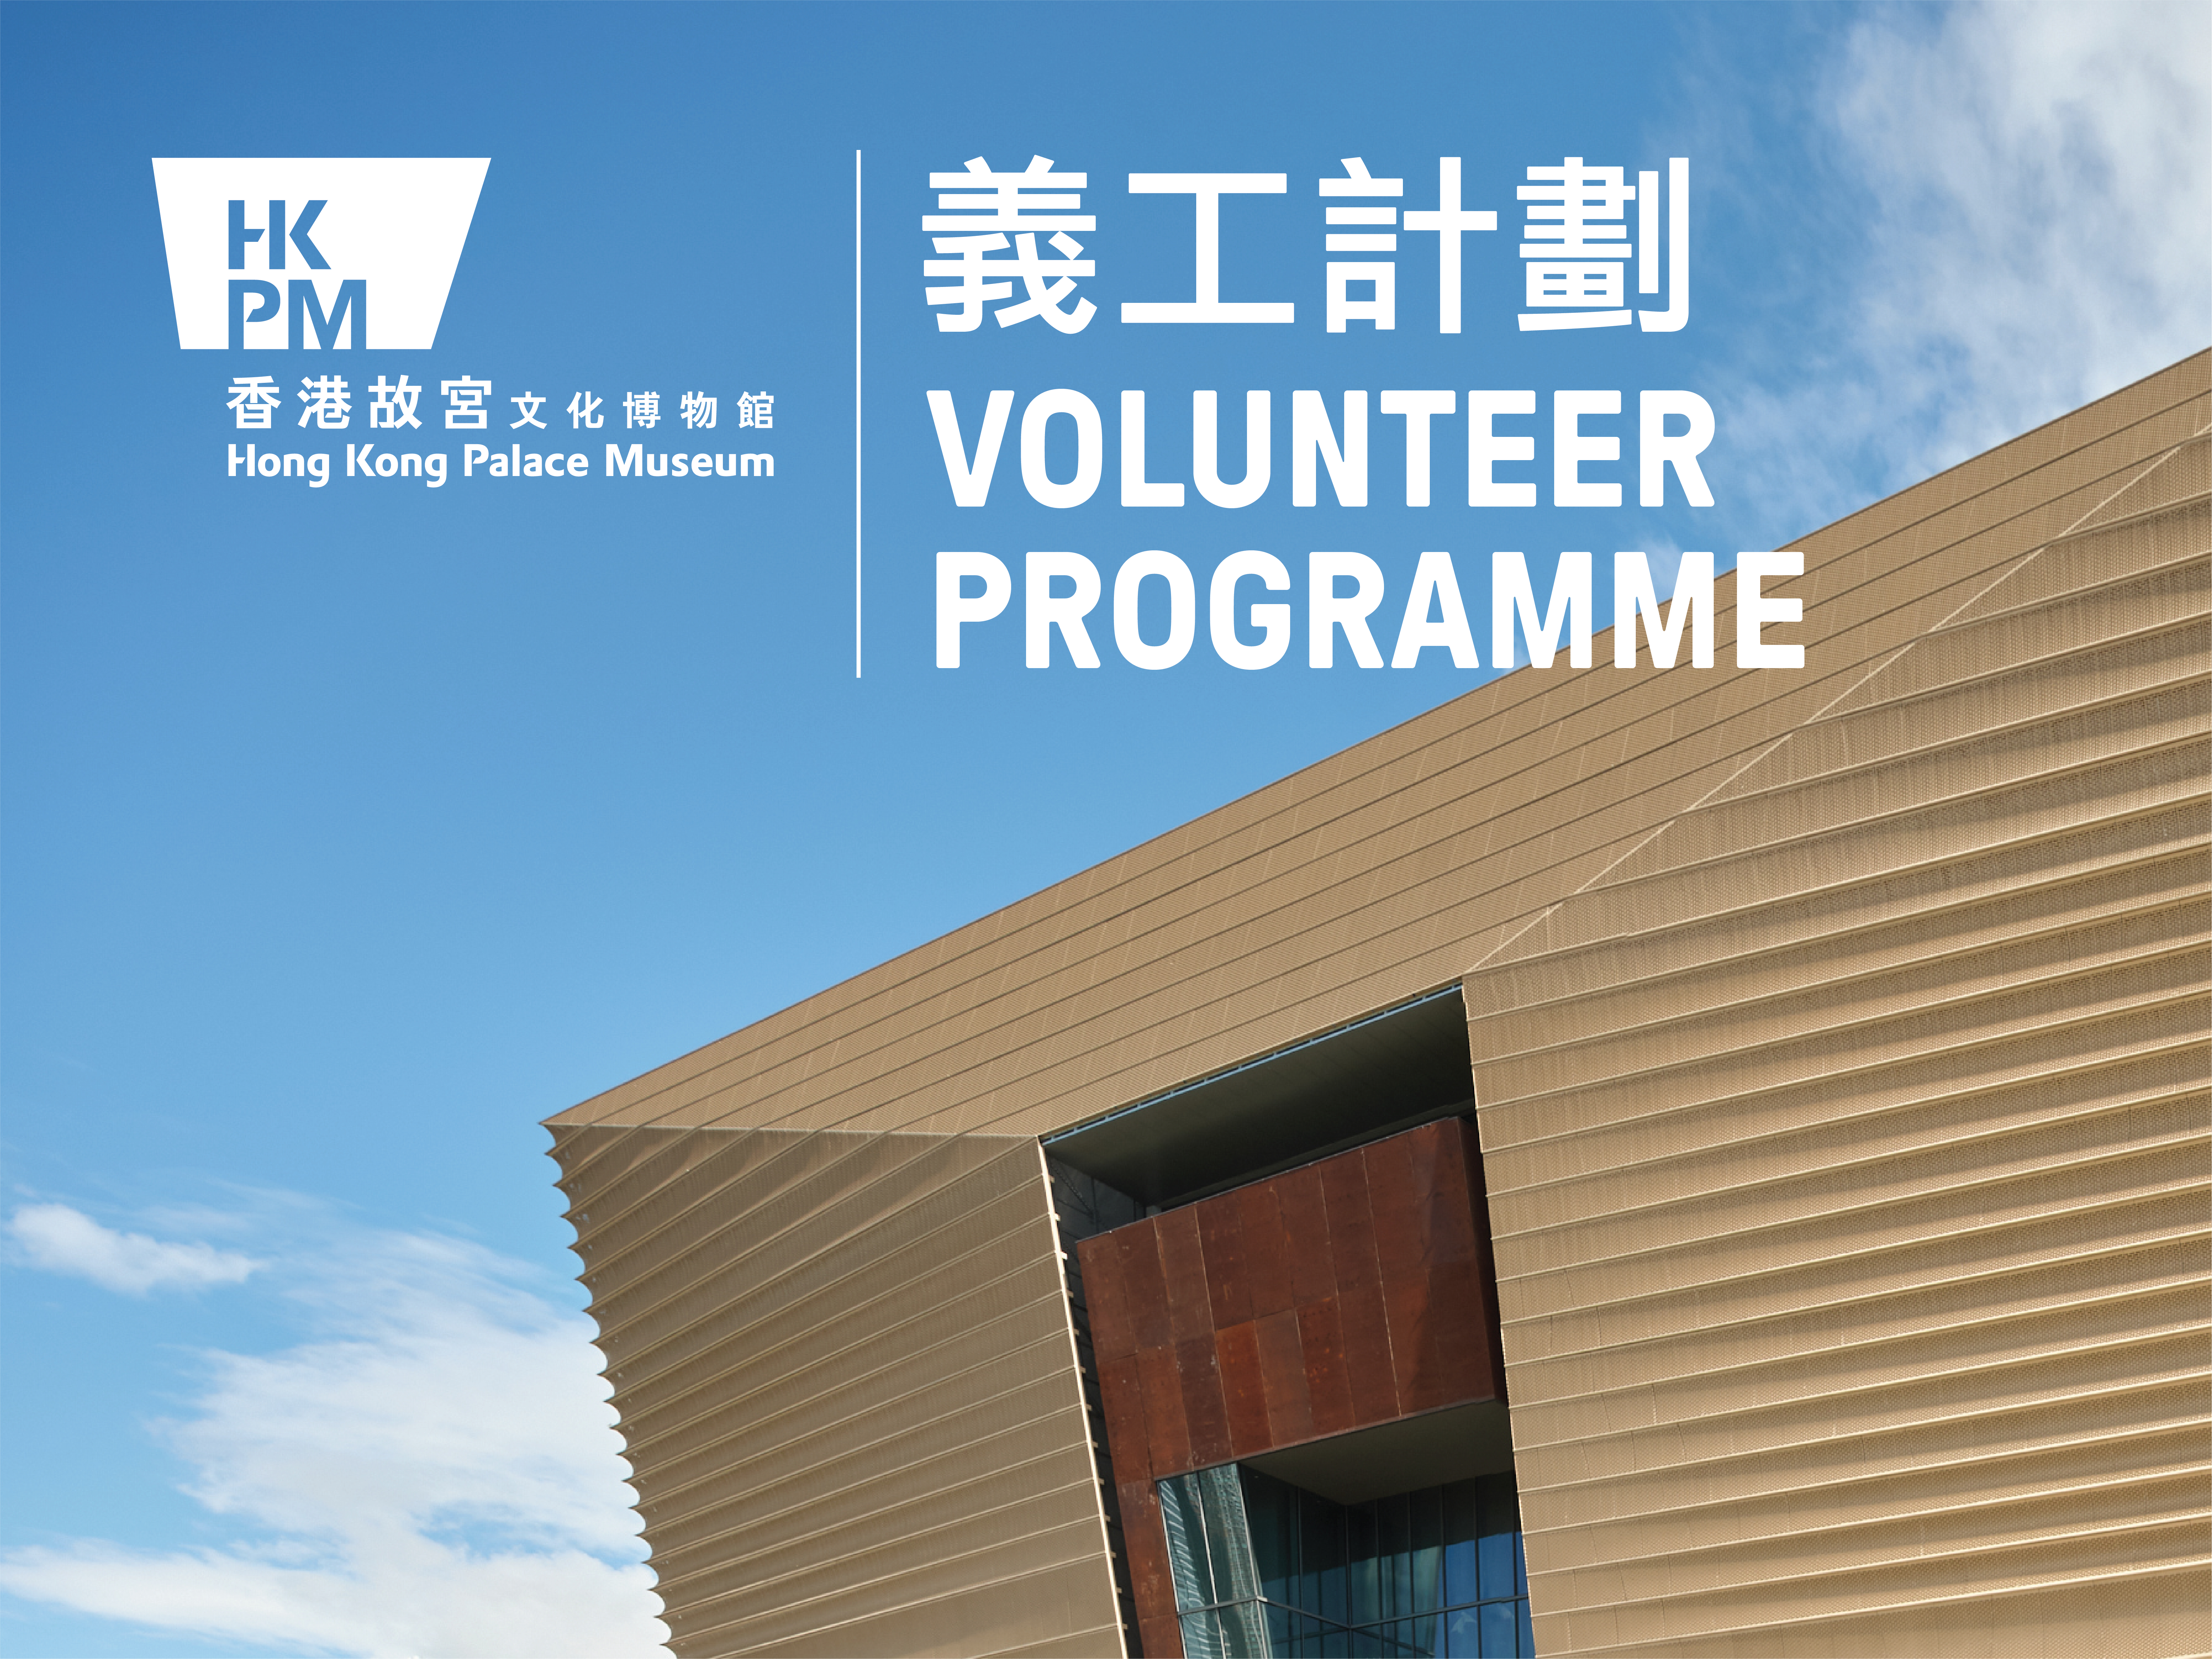 Volunteer programme